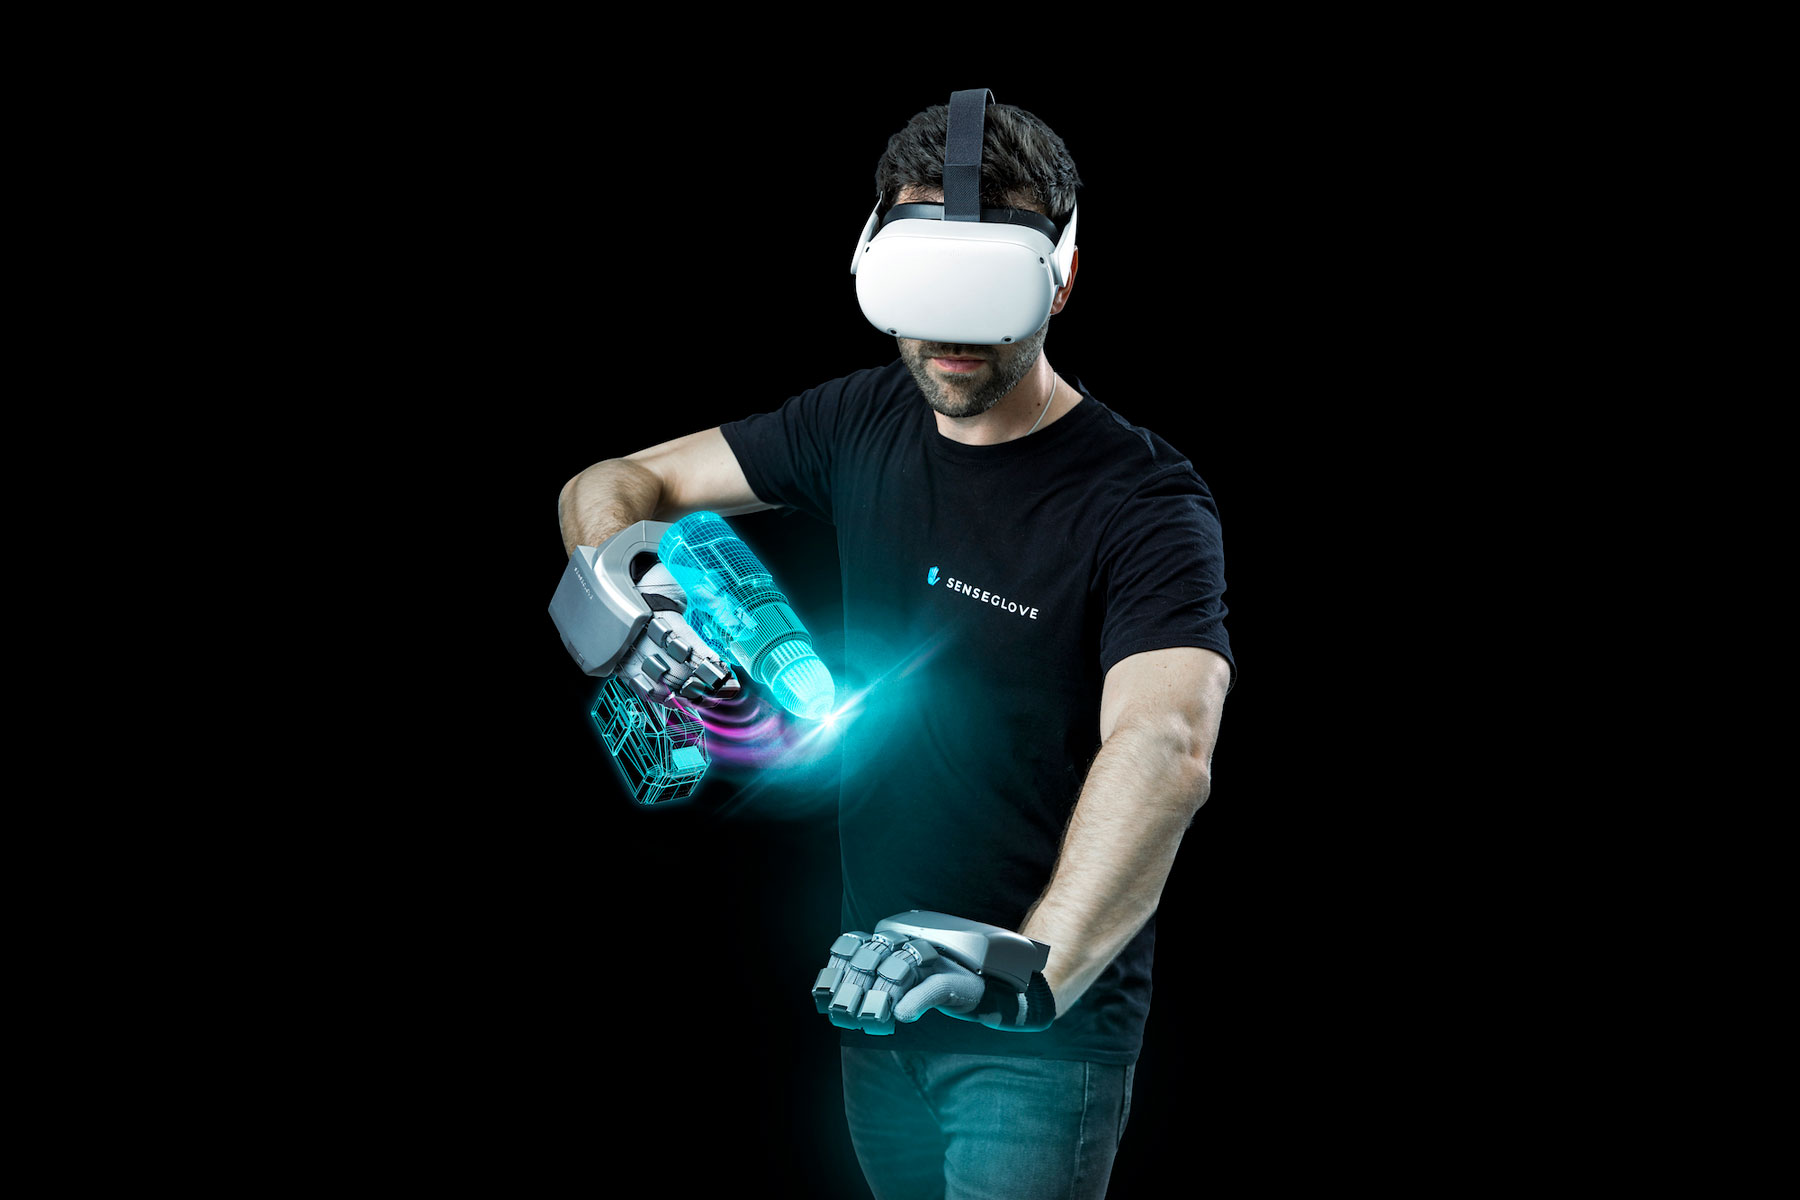 senseglove virtual reality glove